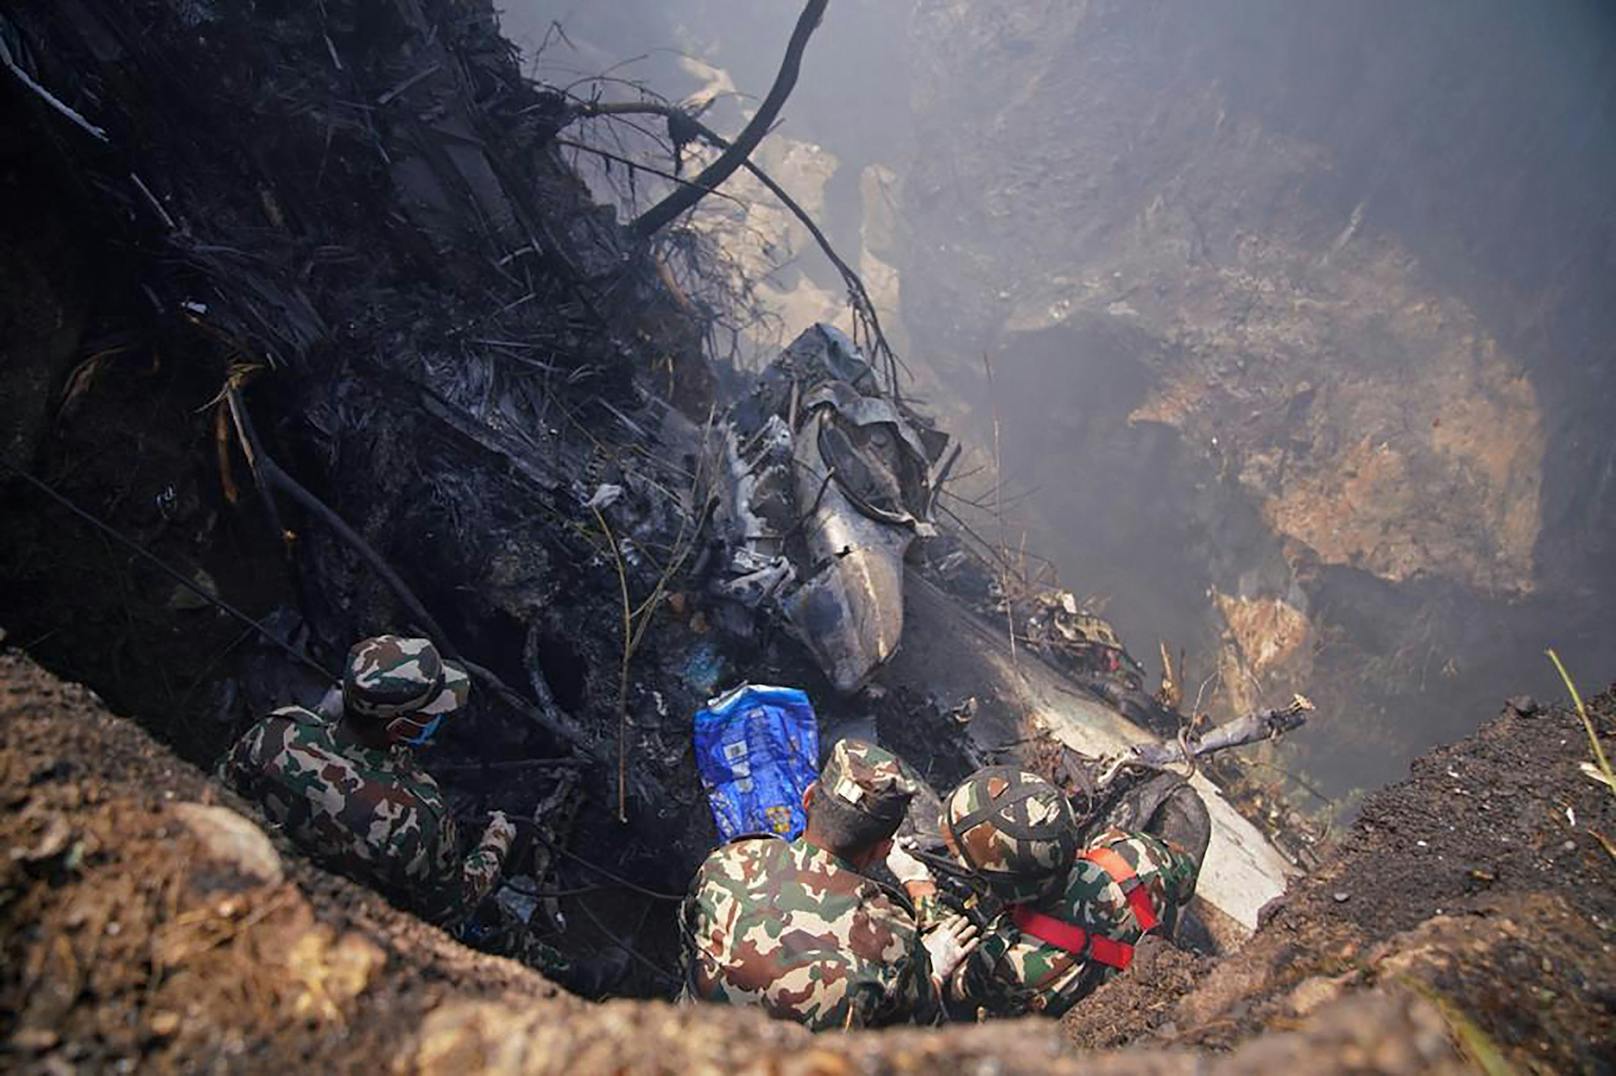 Beim Landeanflug ist die Maschine abgestürzt. Mindestens 40 Menschen sind tot.